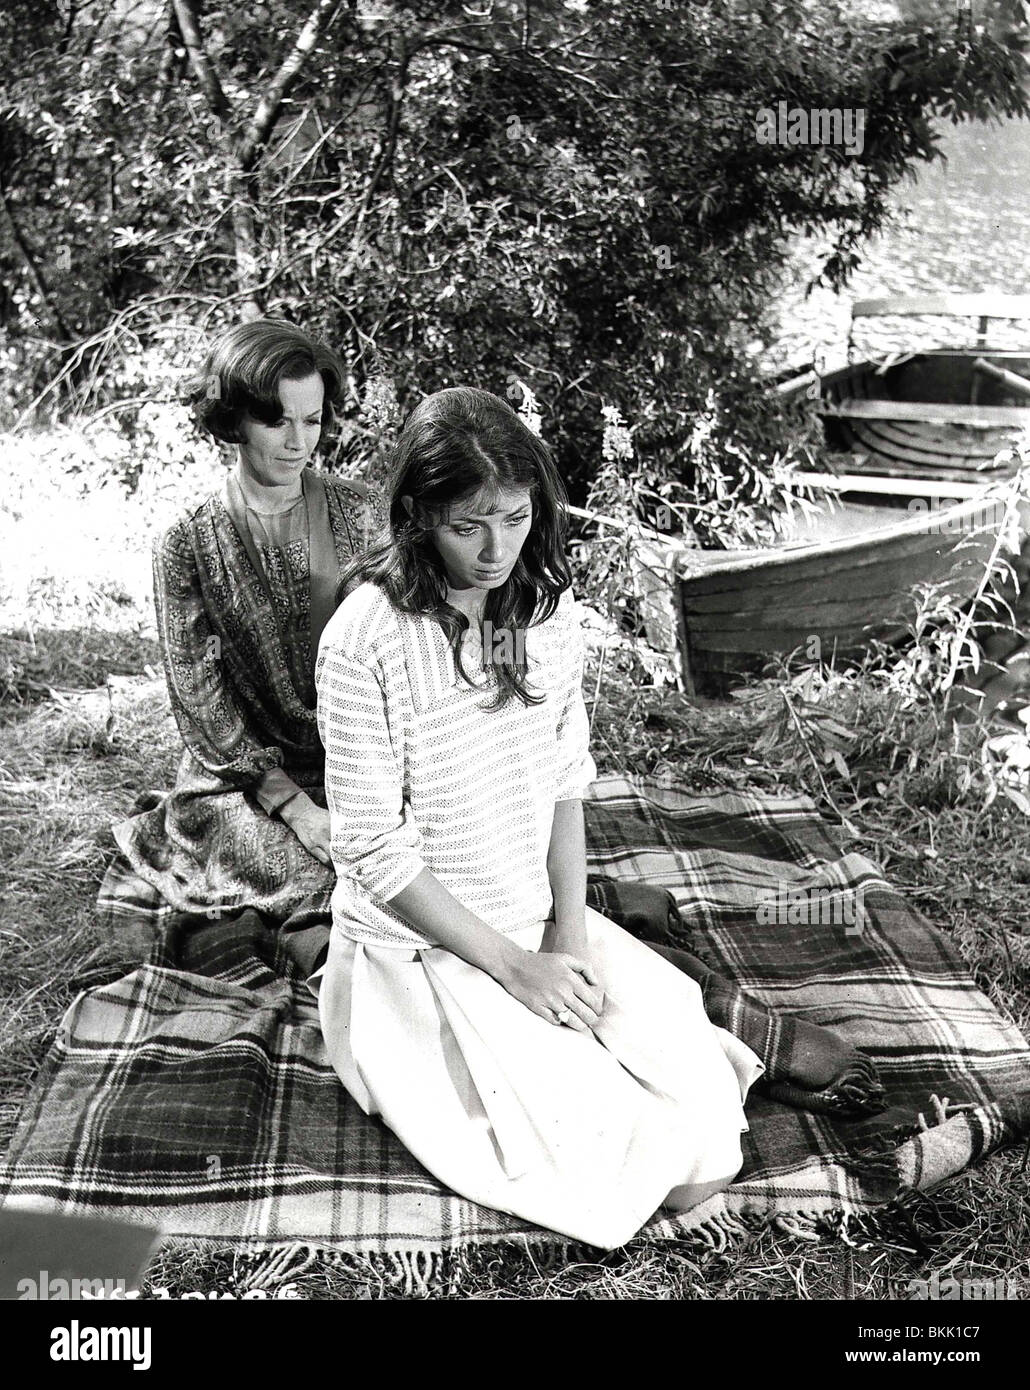 THE VIRGIN AND THE GYPSY (1970) HONOR BLACKMAN, JOANNA SHIMKUS VATG 004 P Stock Photo